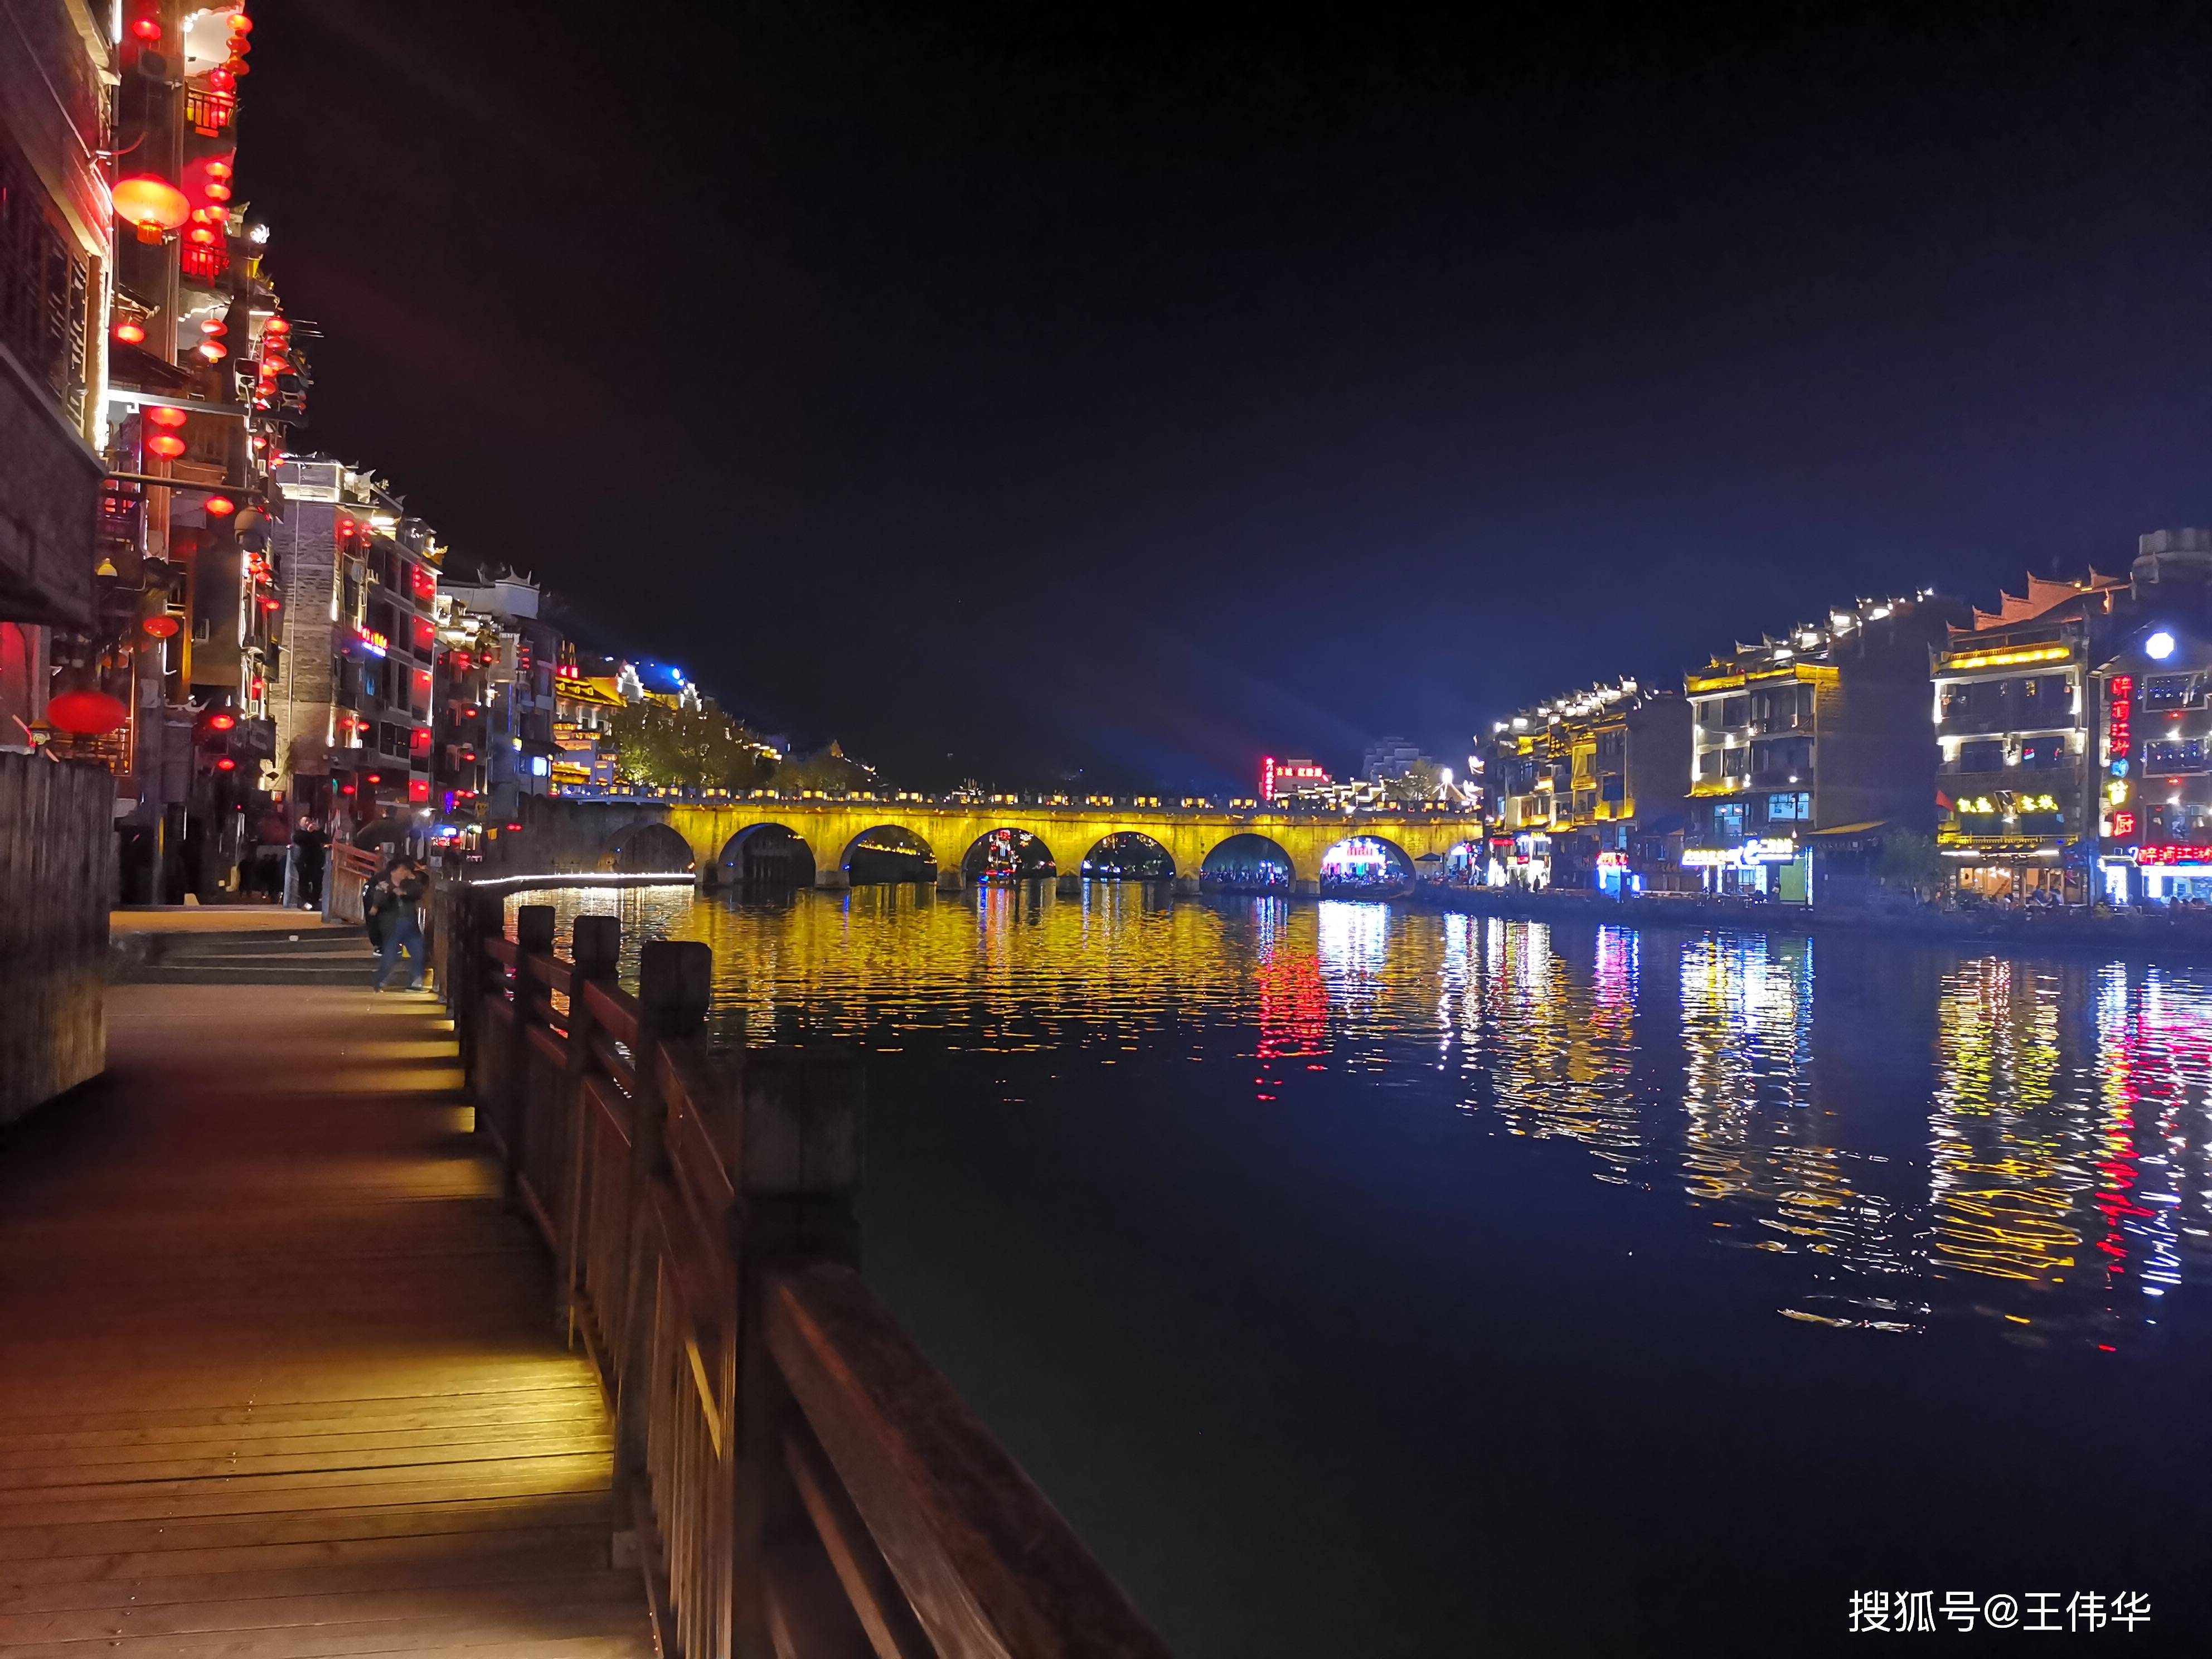 织金平远古镇夜景图片